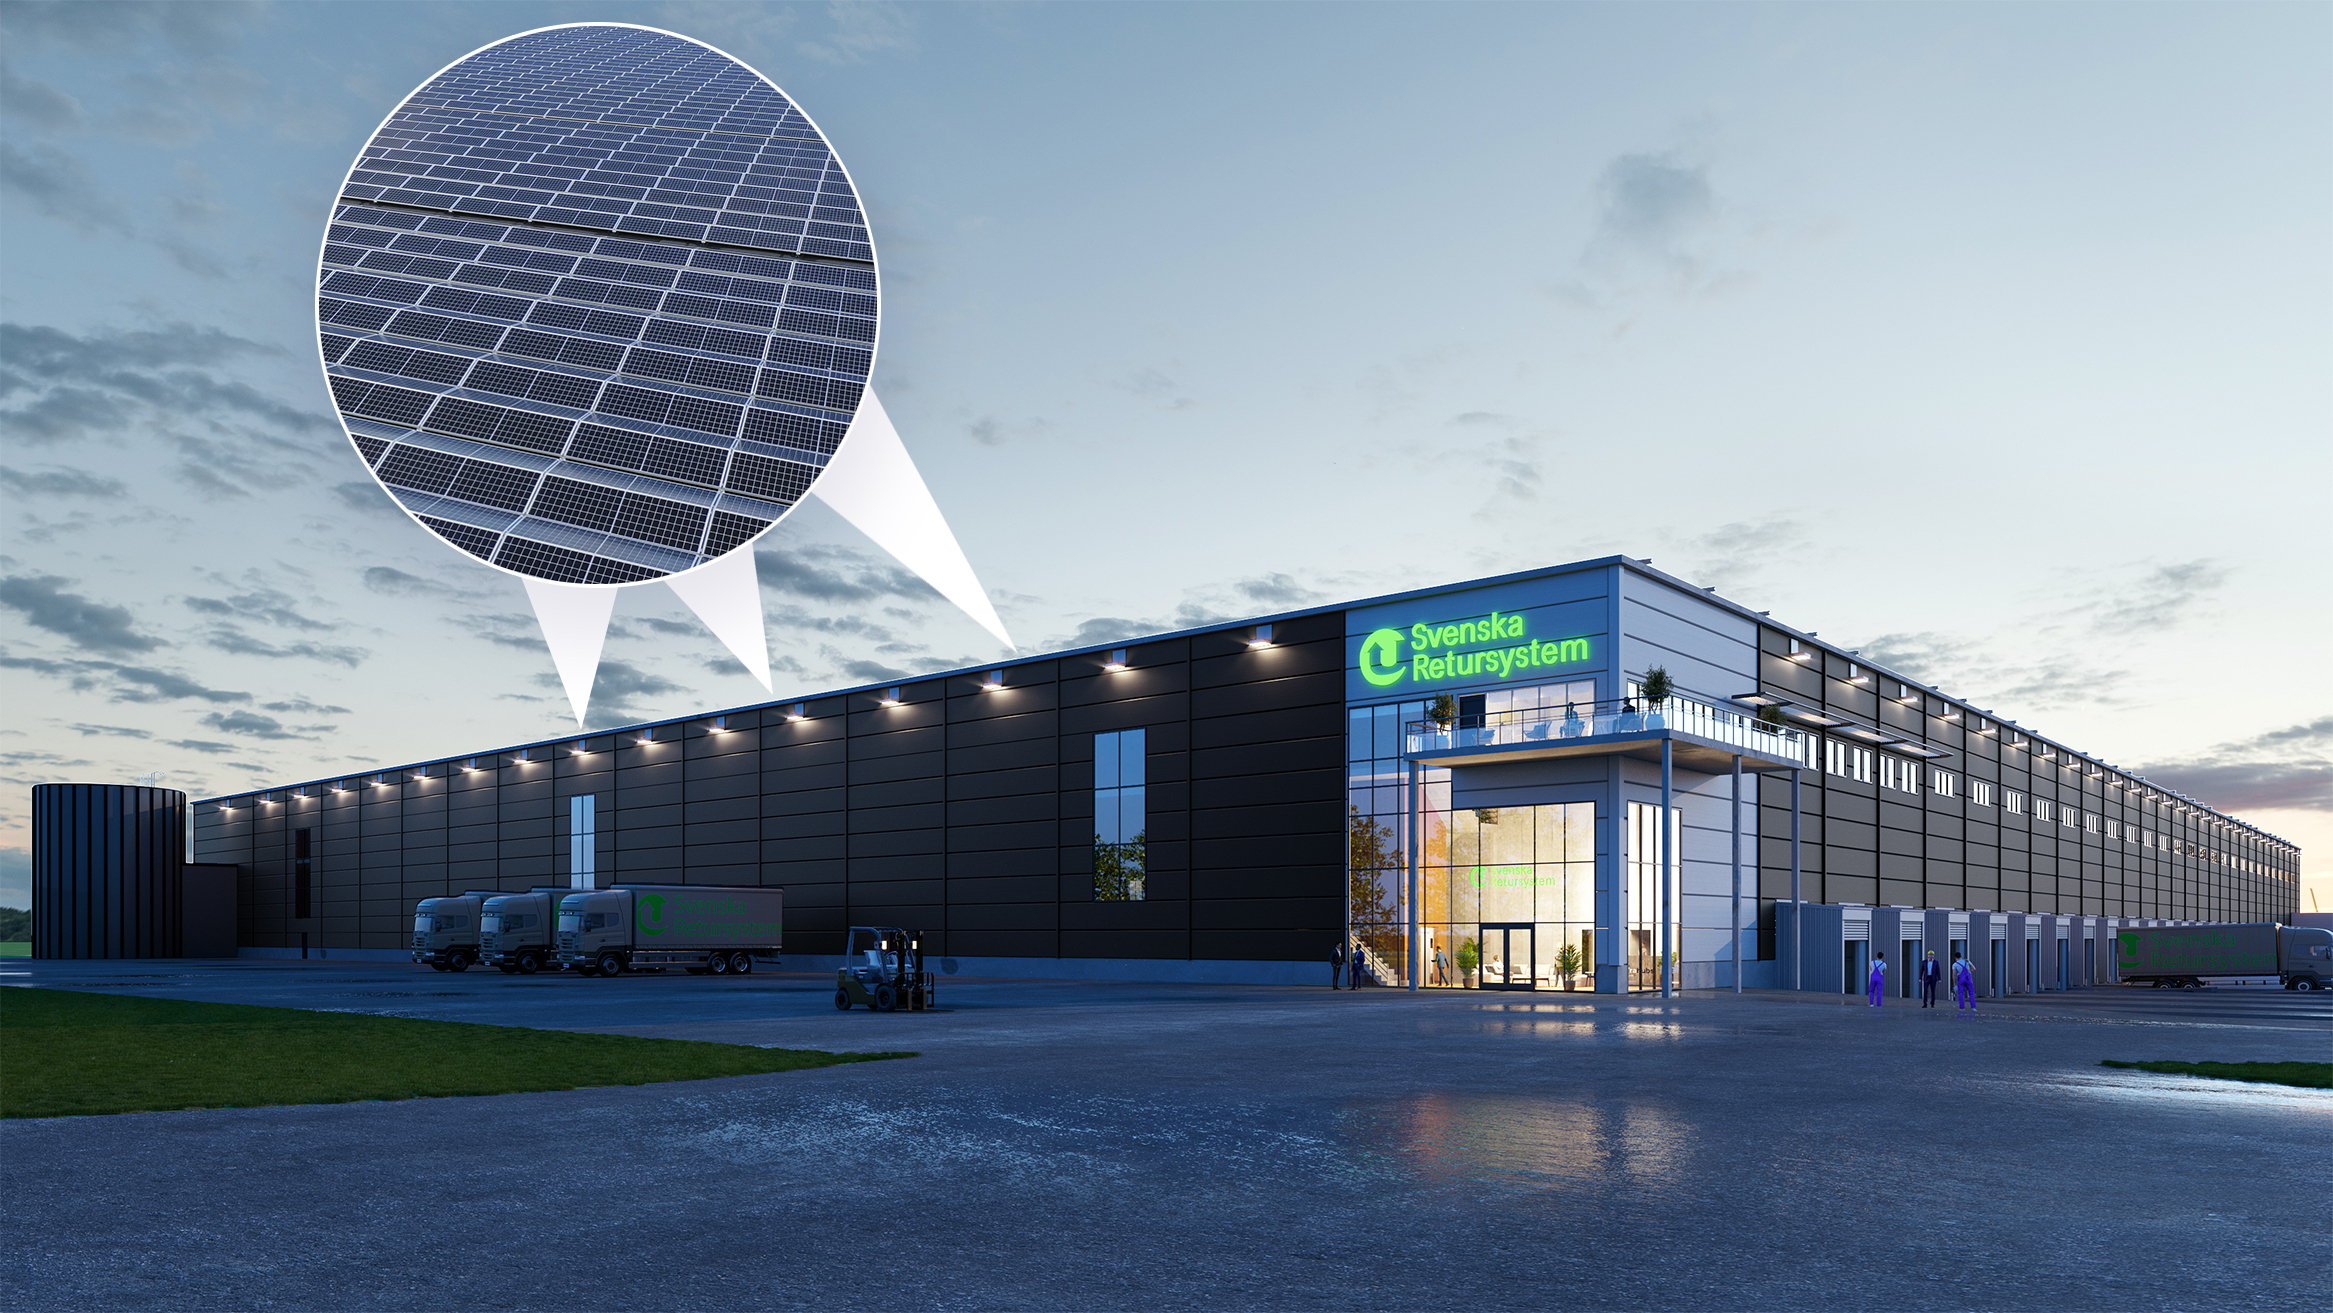 Soltech builds a solar energy solution for Svenska Retursystem in Jönköping - order value of SEK 25 million